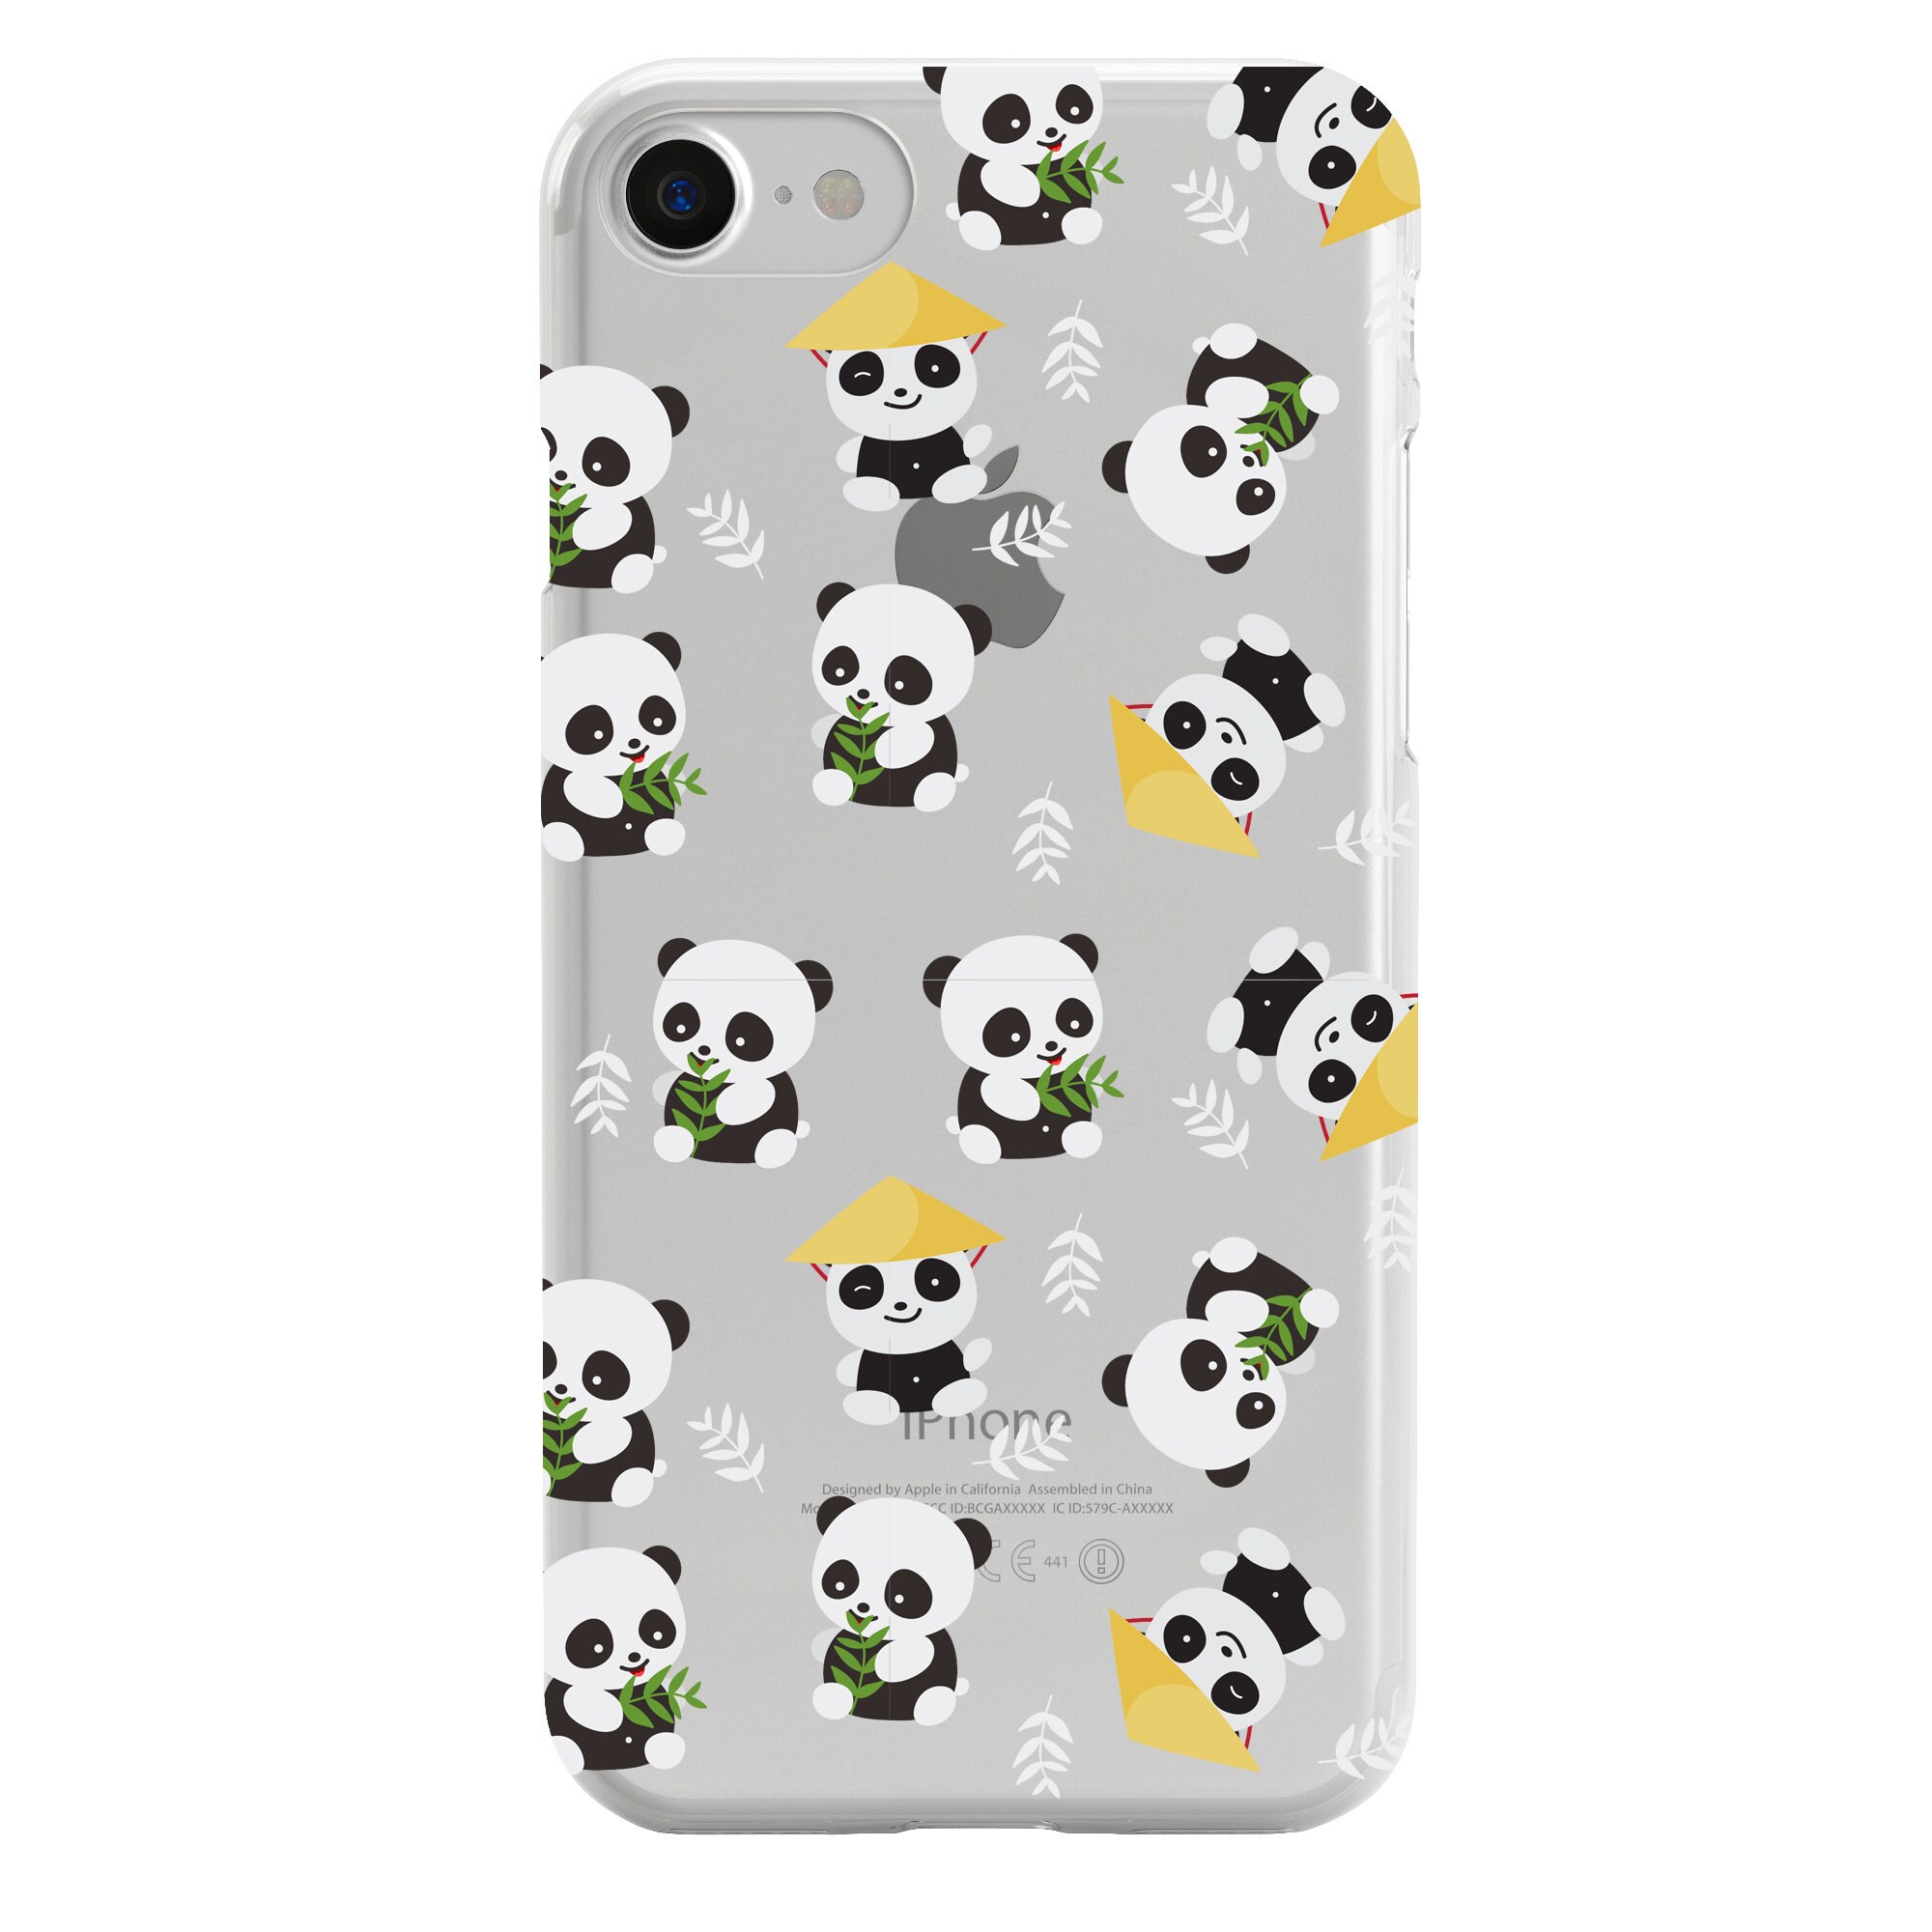 Verhandeling Uitgraving Fruitig Clear Panda Phone Case Iphone 8 Case Iphone 7 Case Iphone 6 - Etsy